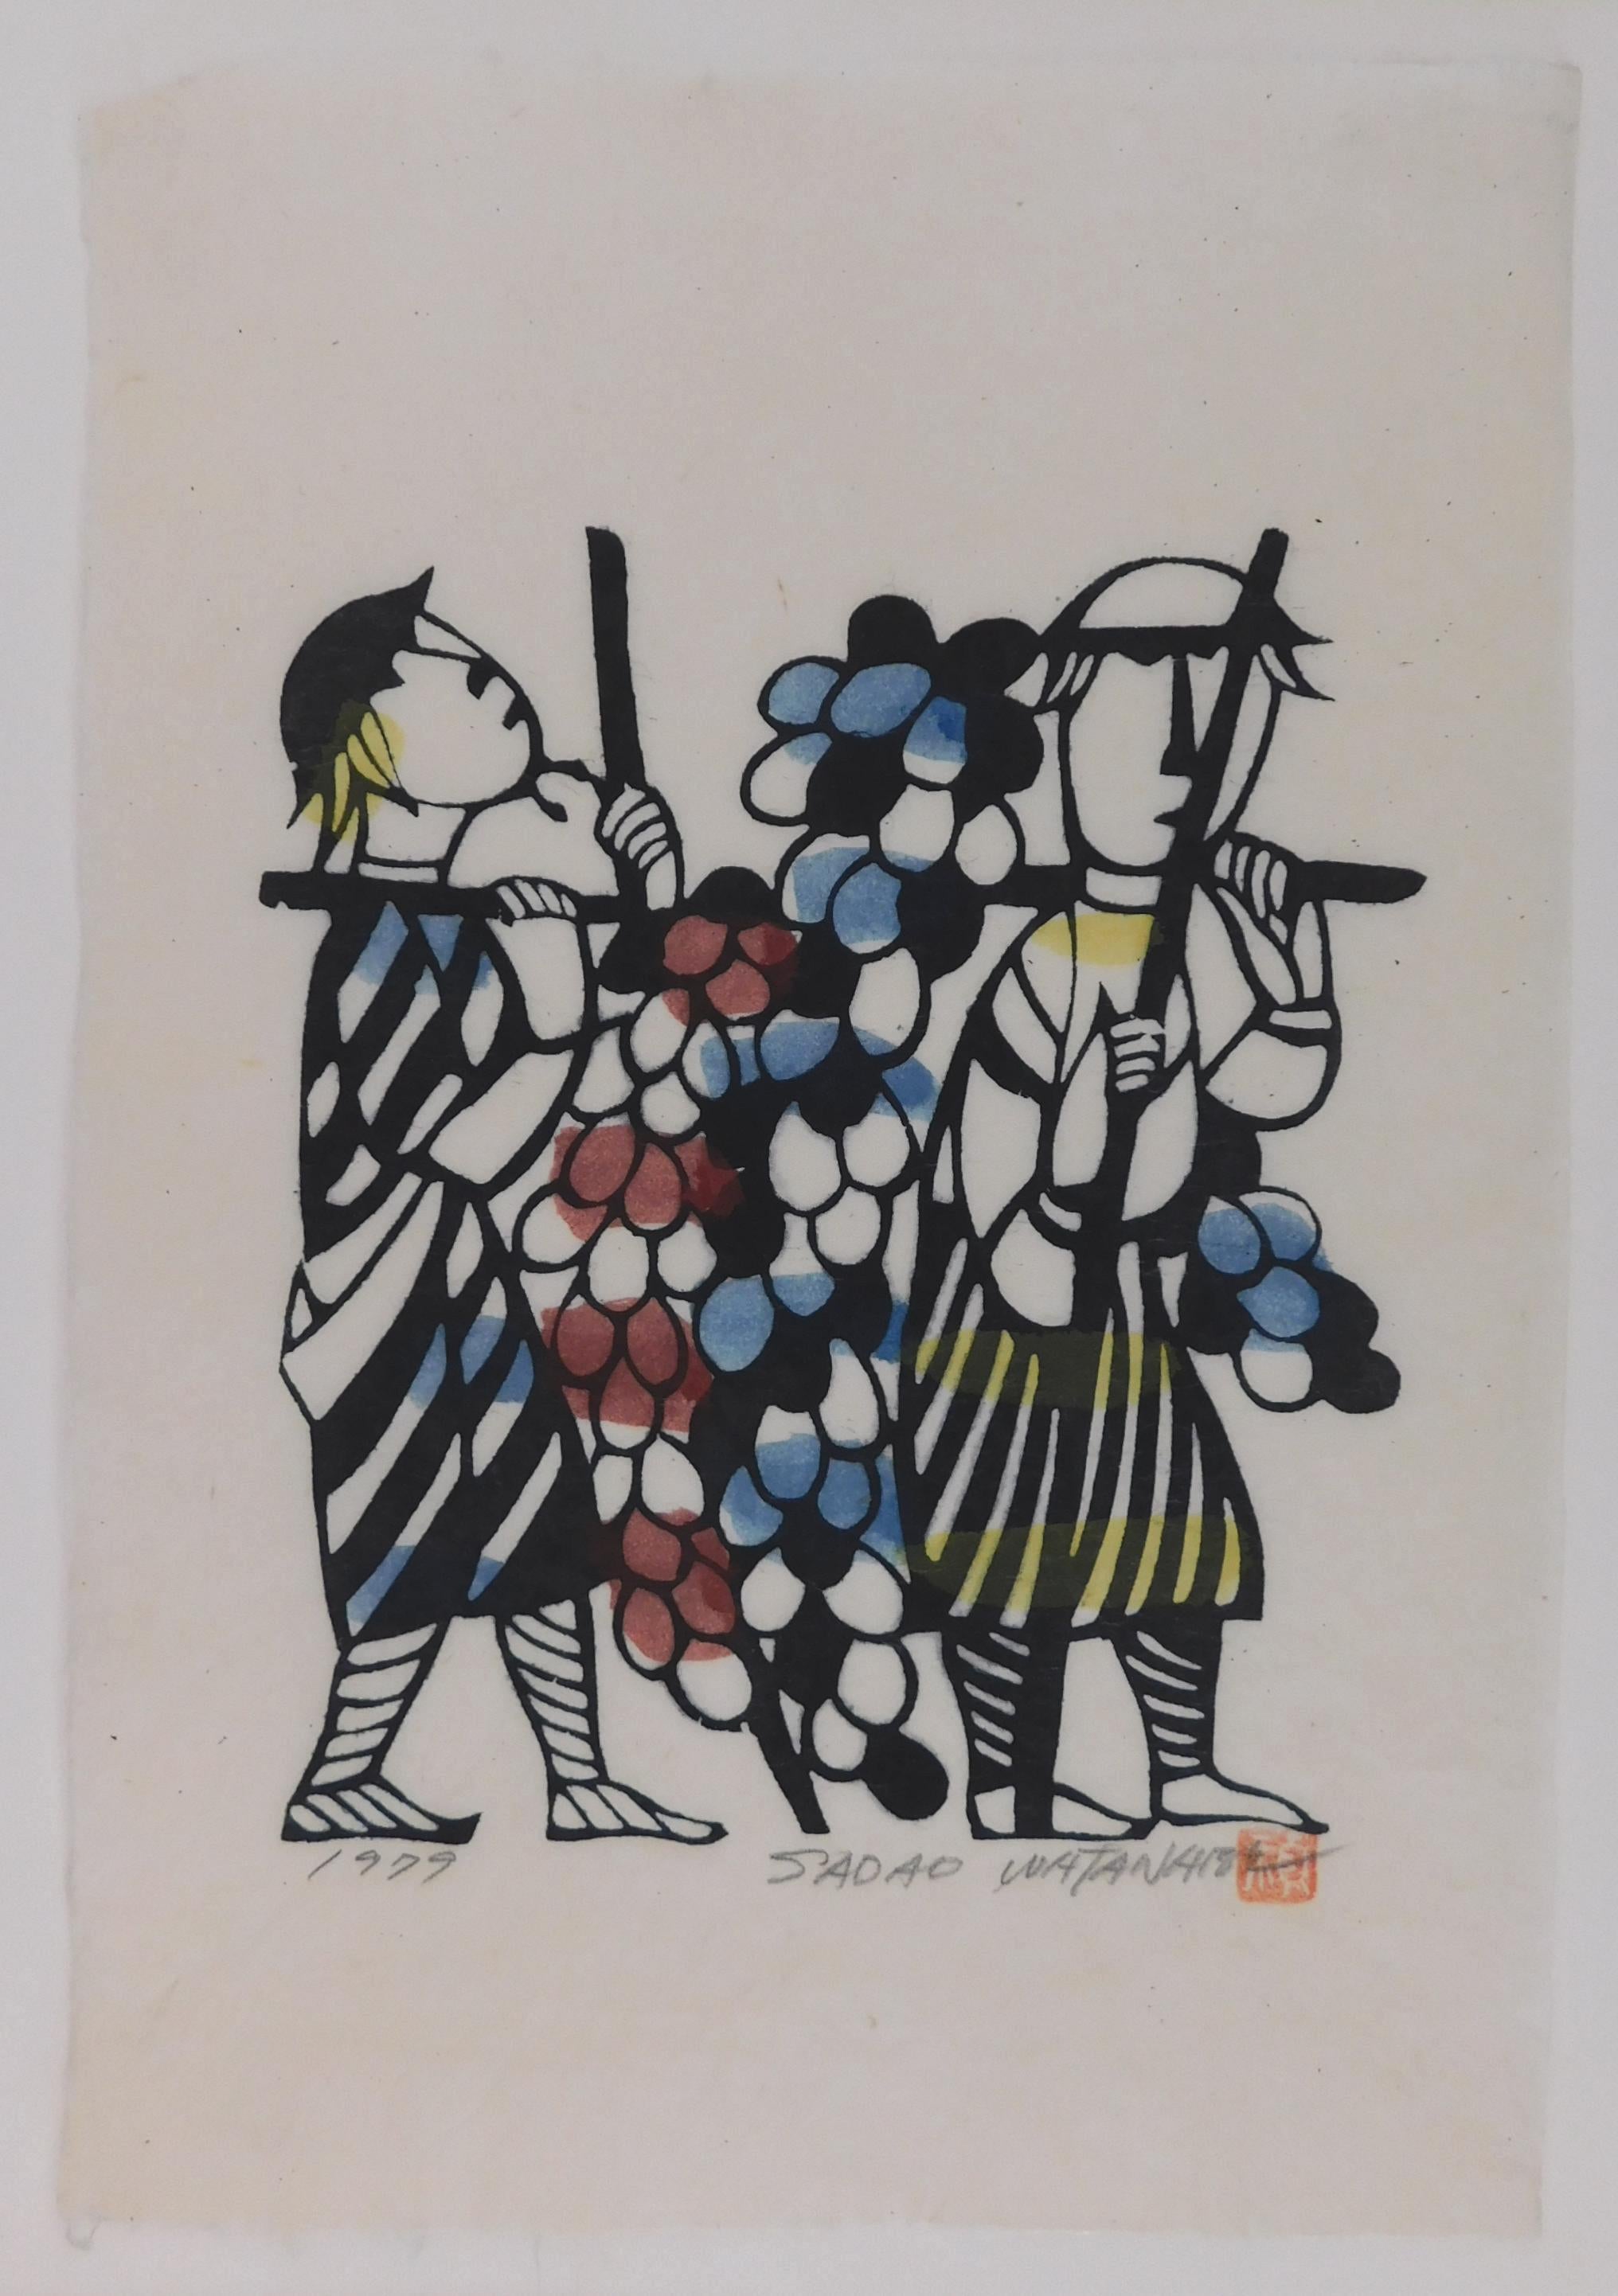 Impression au pochoir de Sadao Watanabe, coloriée à la main sur du papier washi fait à la main.
L'image est tirée de l'histoire de Moïse : Nombres 13, 23 : 